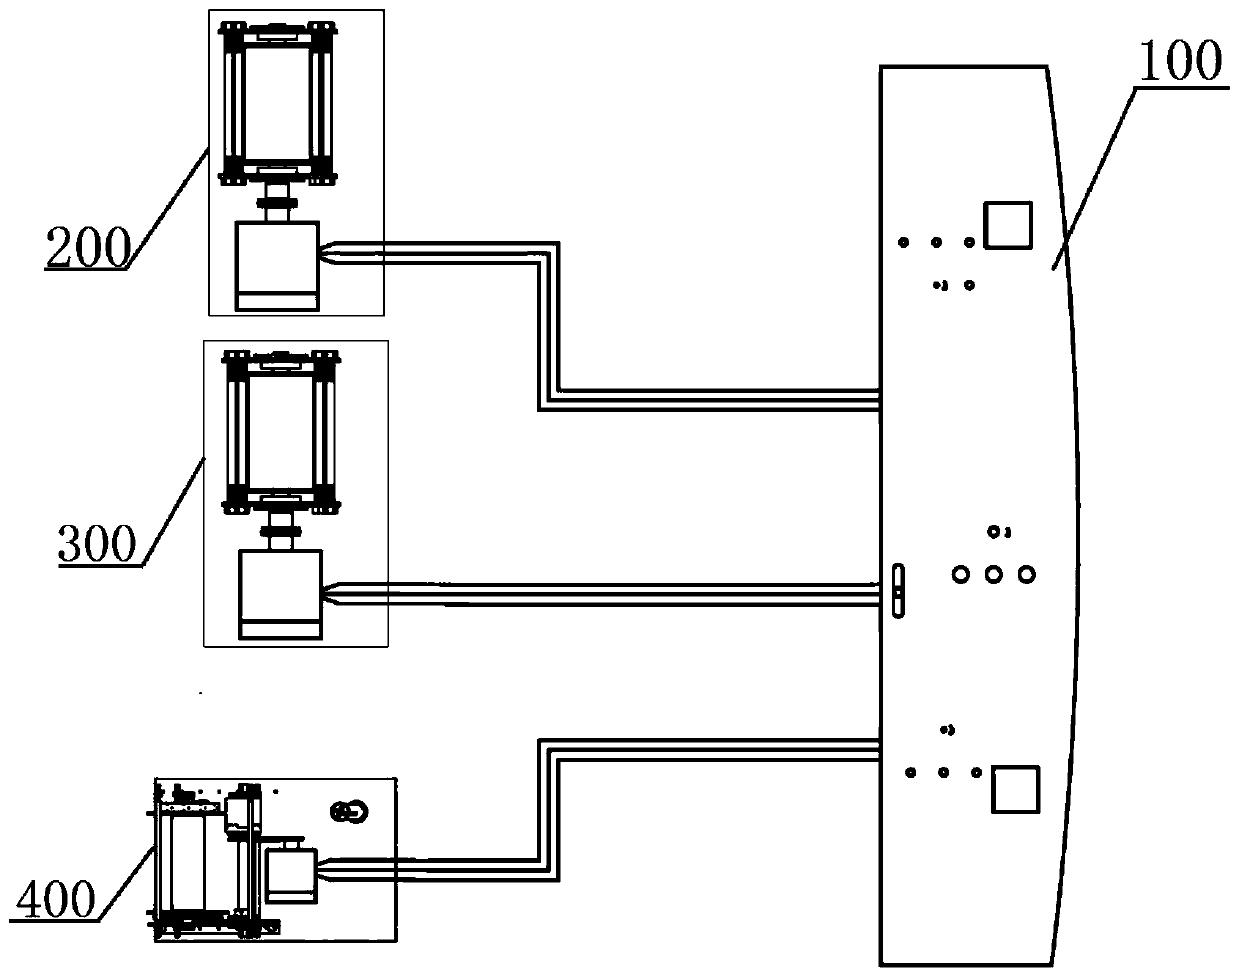 Marine master control hydrologic three-winch linkage control system